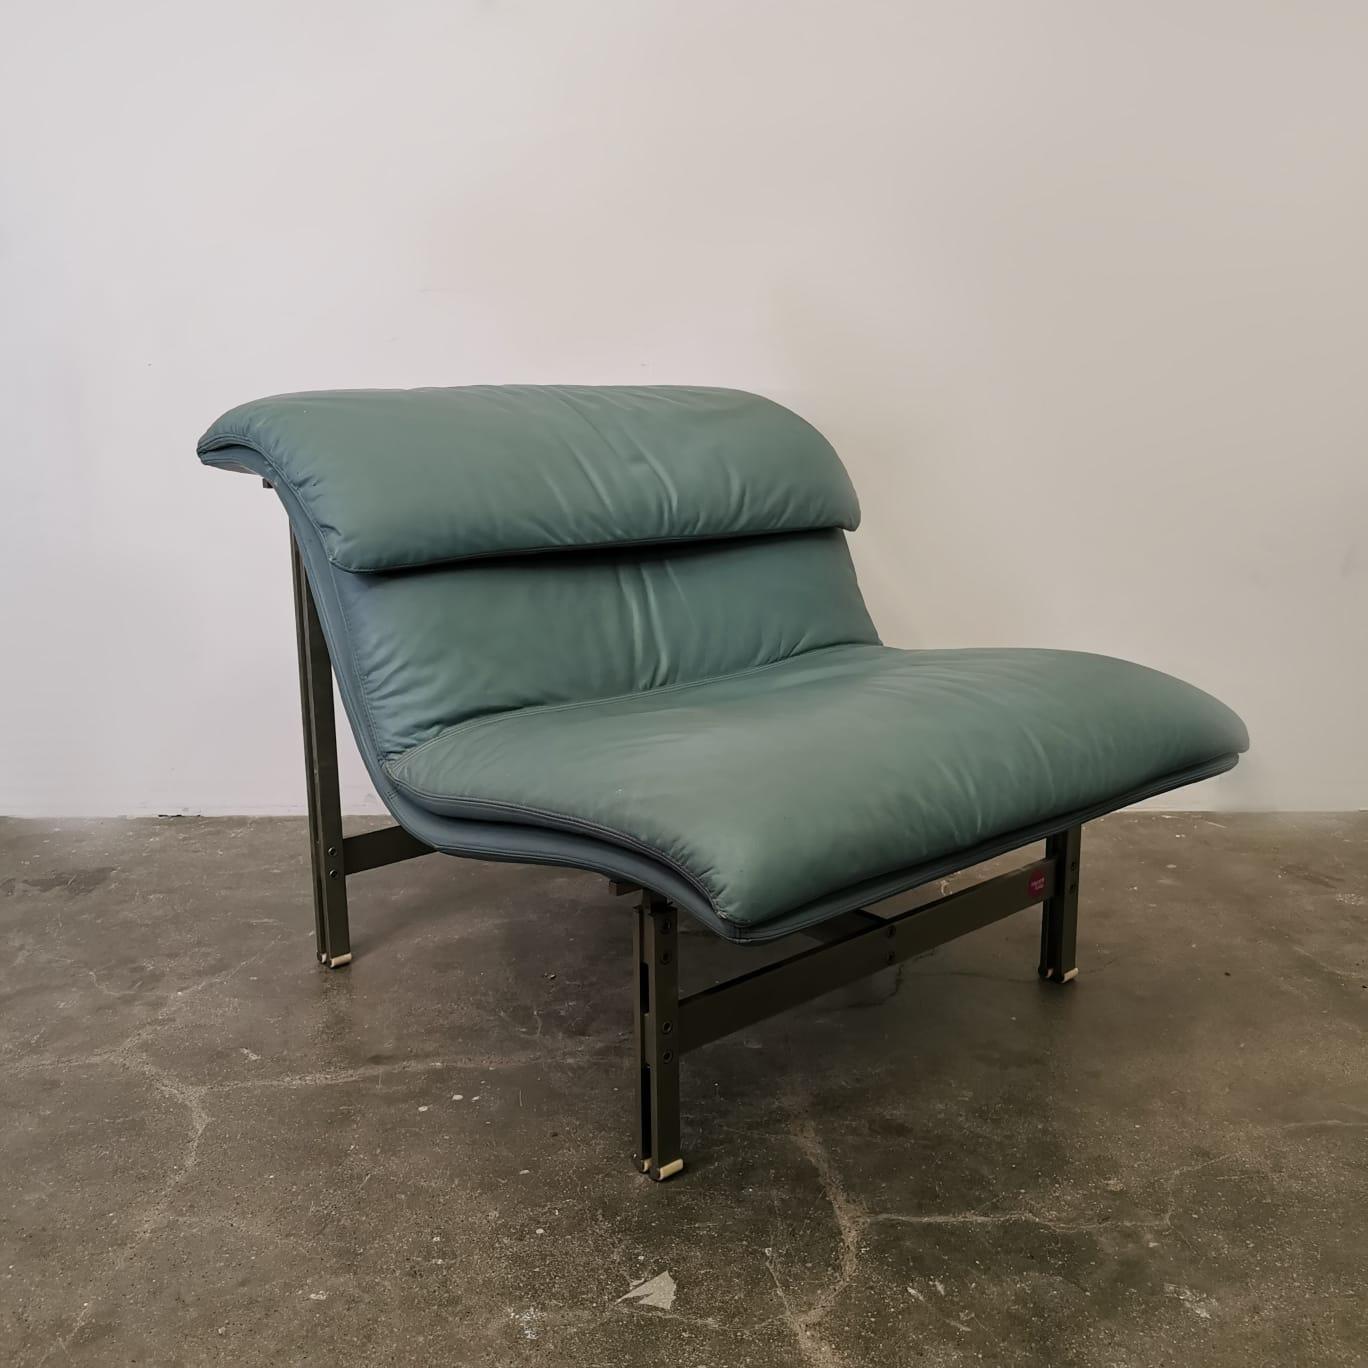 Les fauteuils Wave, conçus par Giovanni Elegne pour Saporiti, sont une paire de chaises captivantes qui incarnent l'élégance et l'innovation. Avec leur dossier en forme de vague, ces fauteuils s'intègrent parfaitement dans tous les intérieurs.
Les